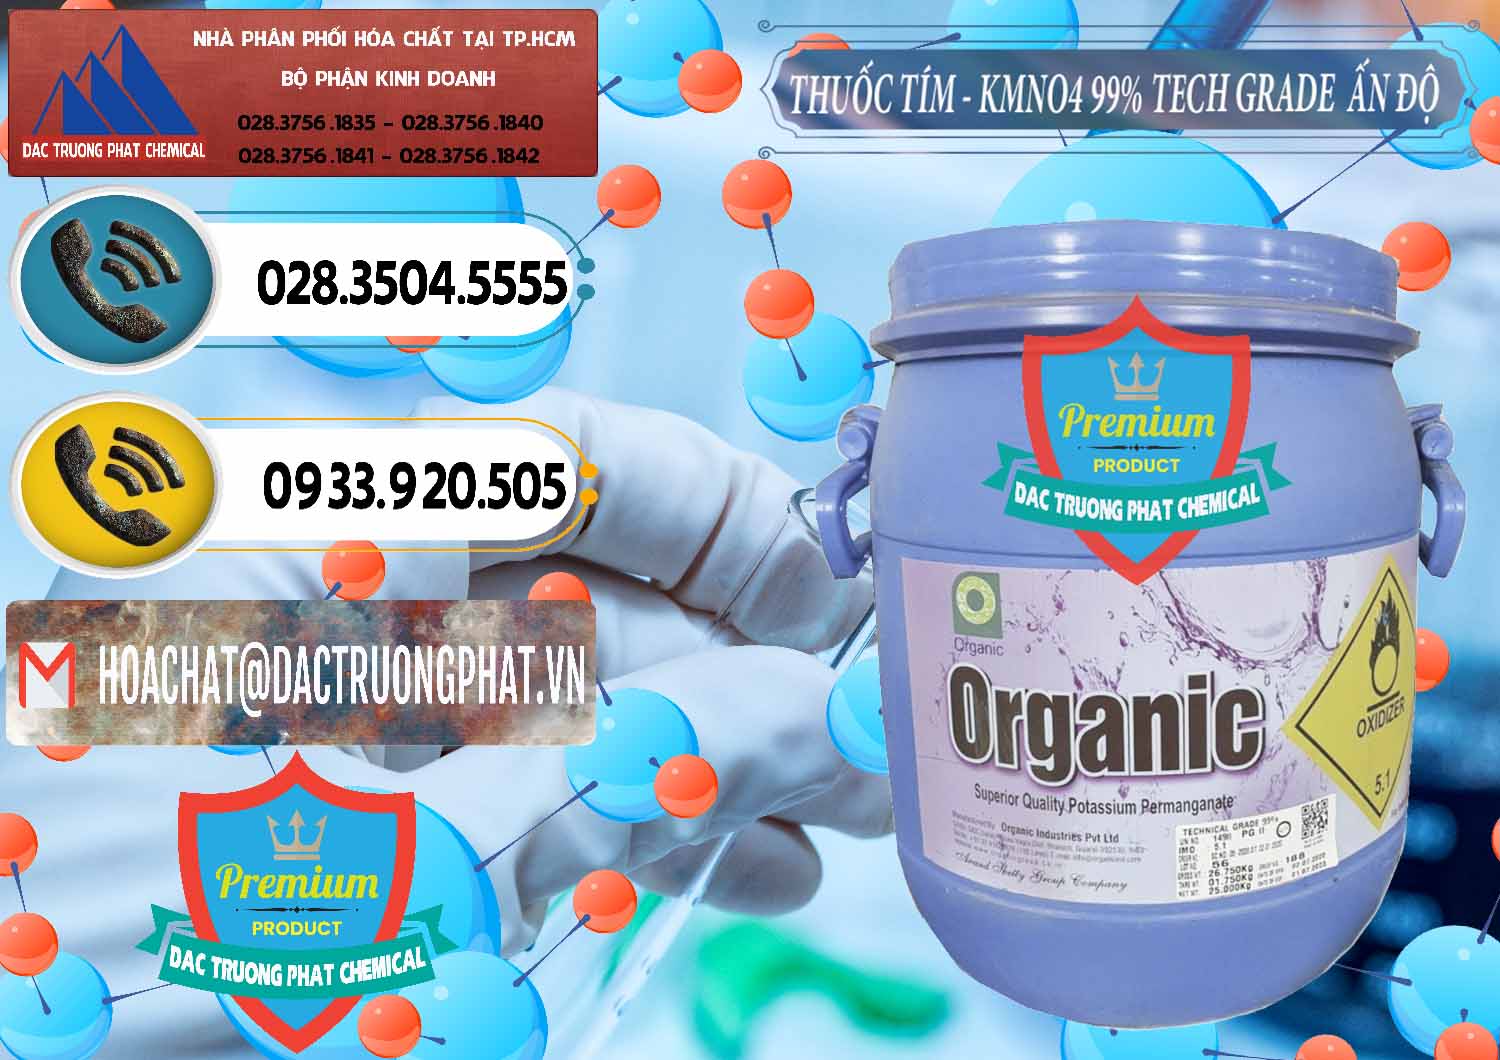 Công ty bán - cung cấp Thuốc Tím - KMNO4 99% Organic Group Ấn Độ India - 0250 - Công ty chuyên nhập khẩu & cung cấp hóa chất tại TP.HCM - hoachatdetnhuom.vn